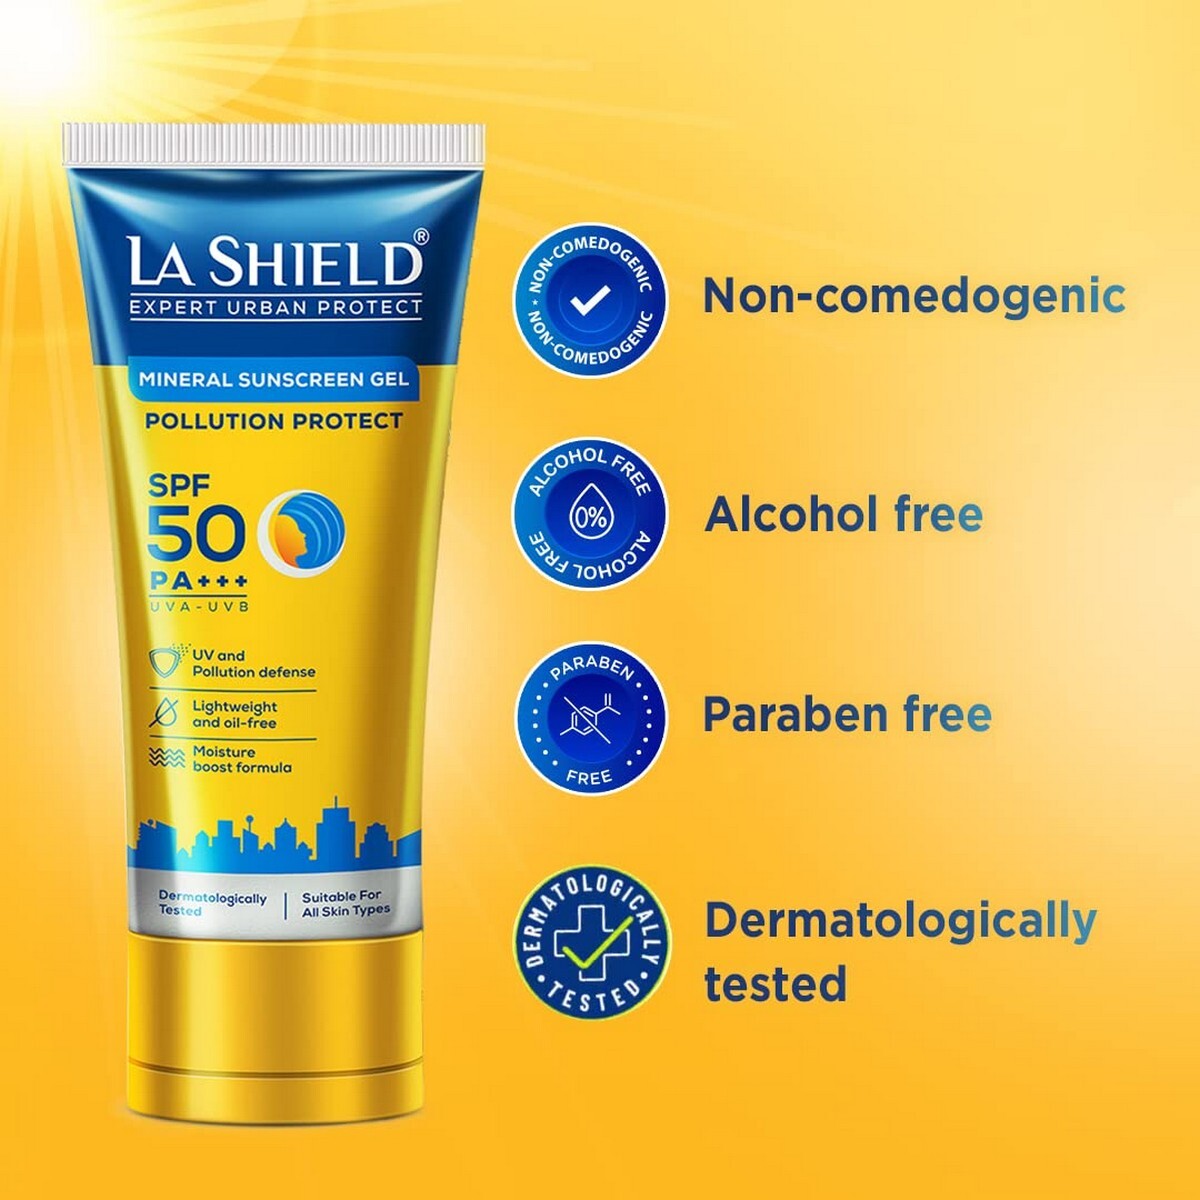 La Shield Pollution Protect Mineral Sunscreen Gel SPF50